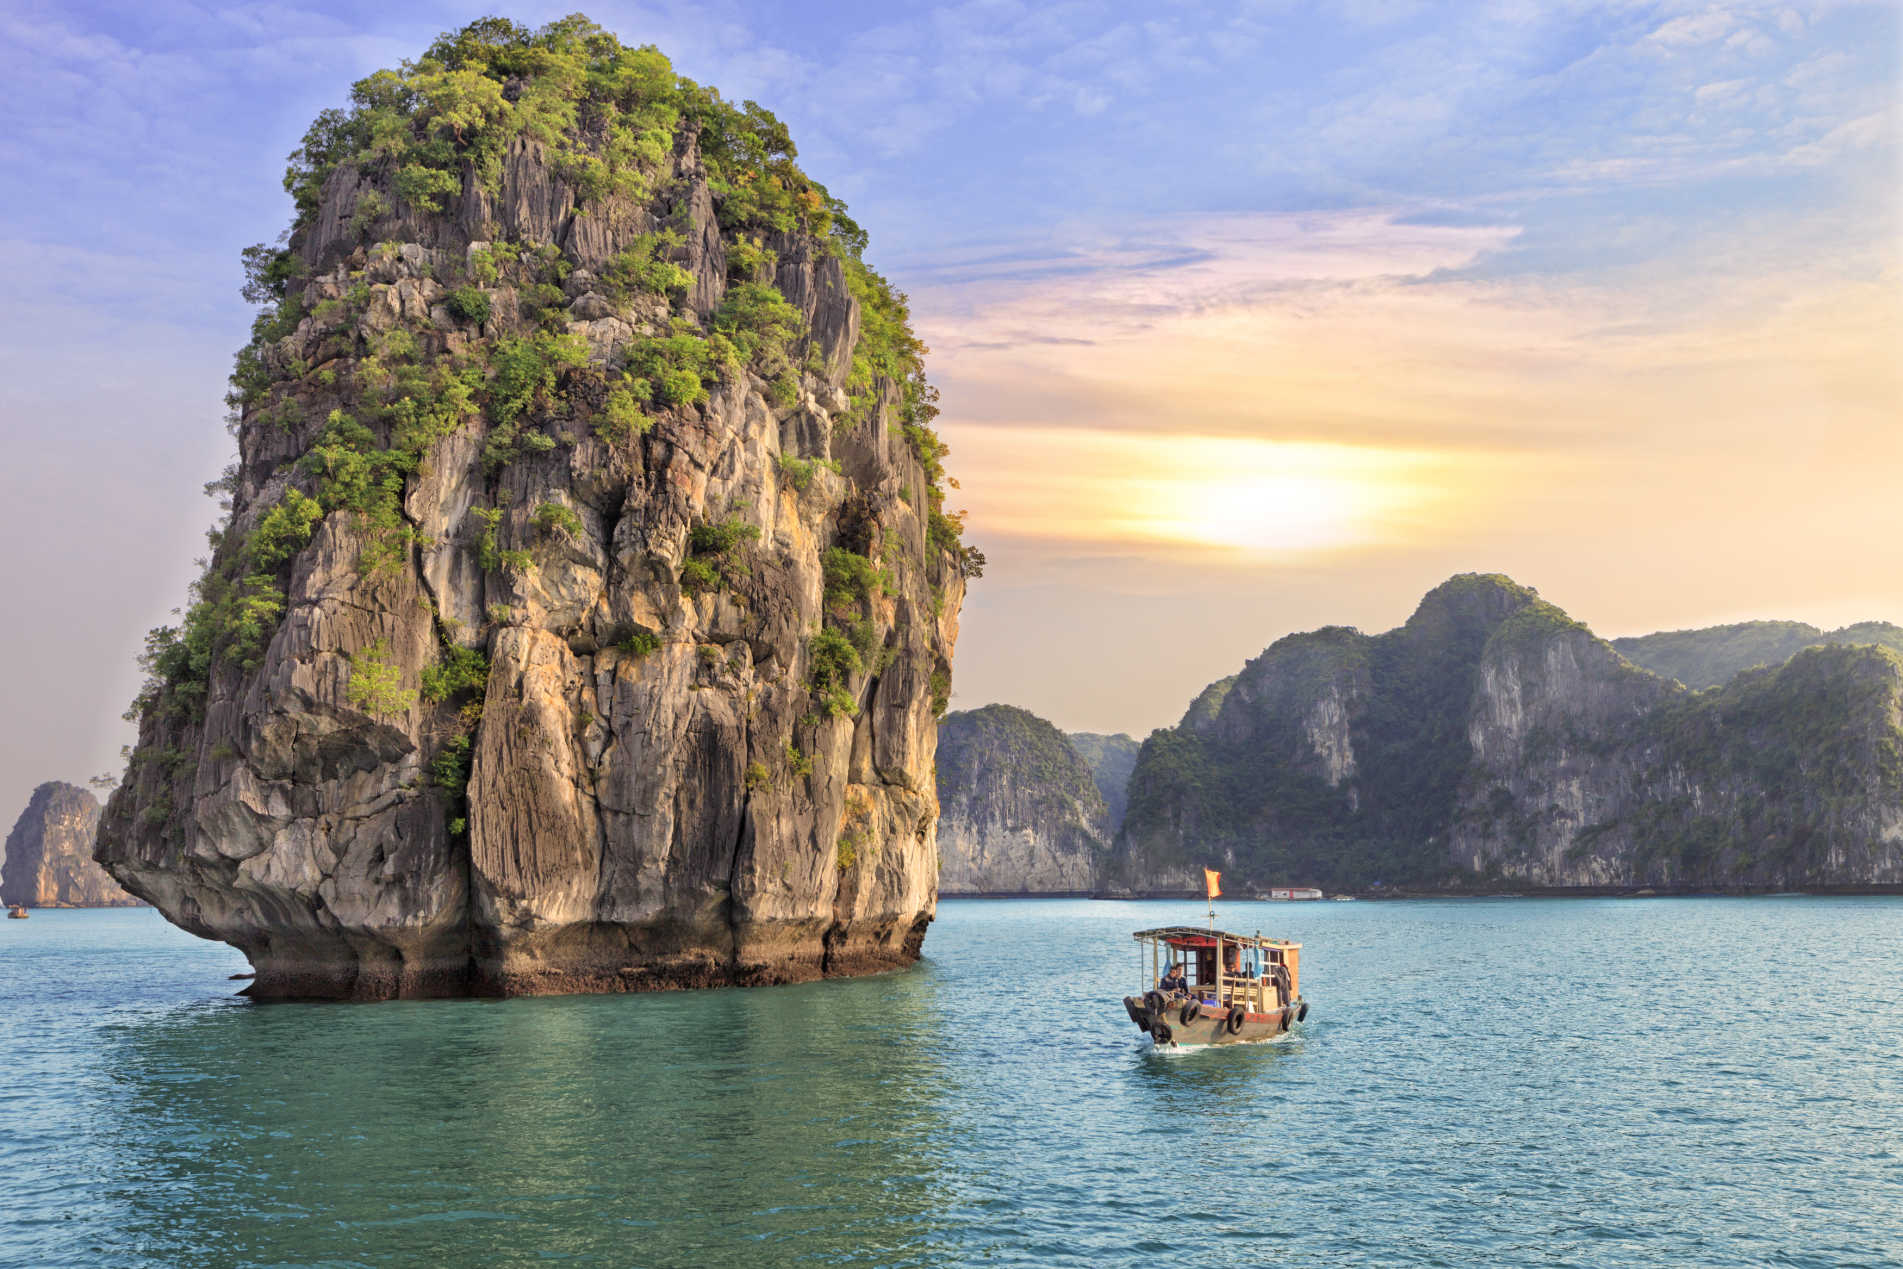 越南这处风景美如画,被称作"海上桂林",电影007曾在此